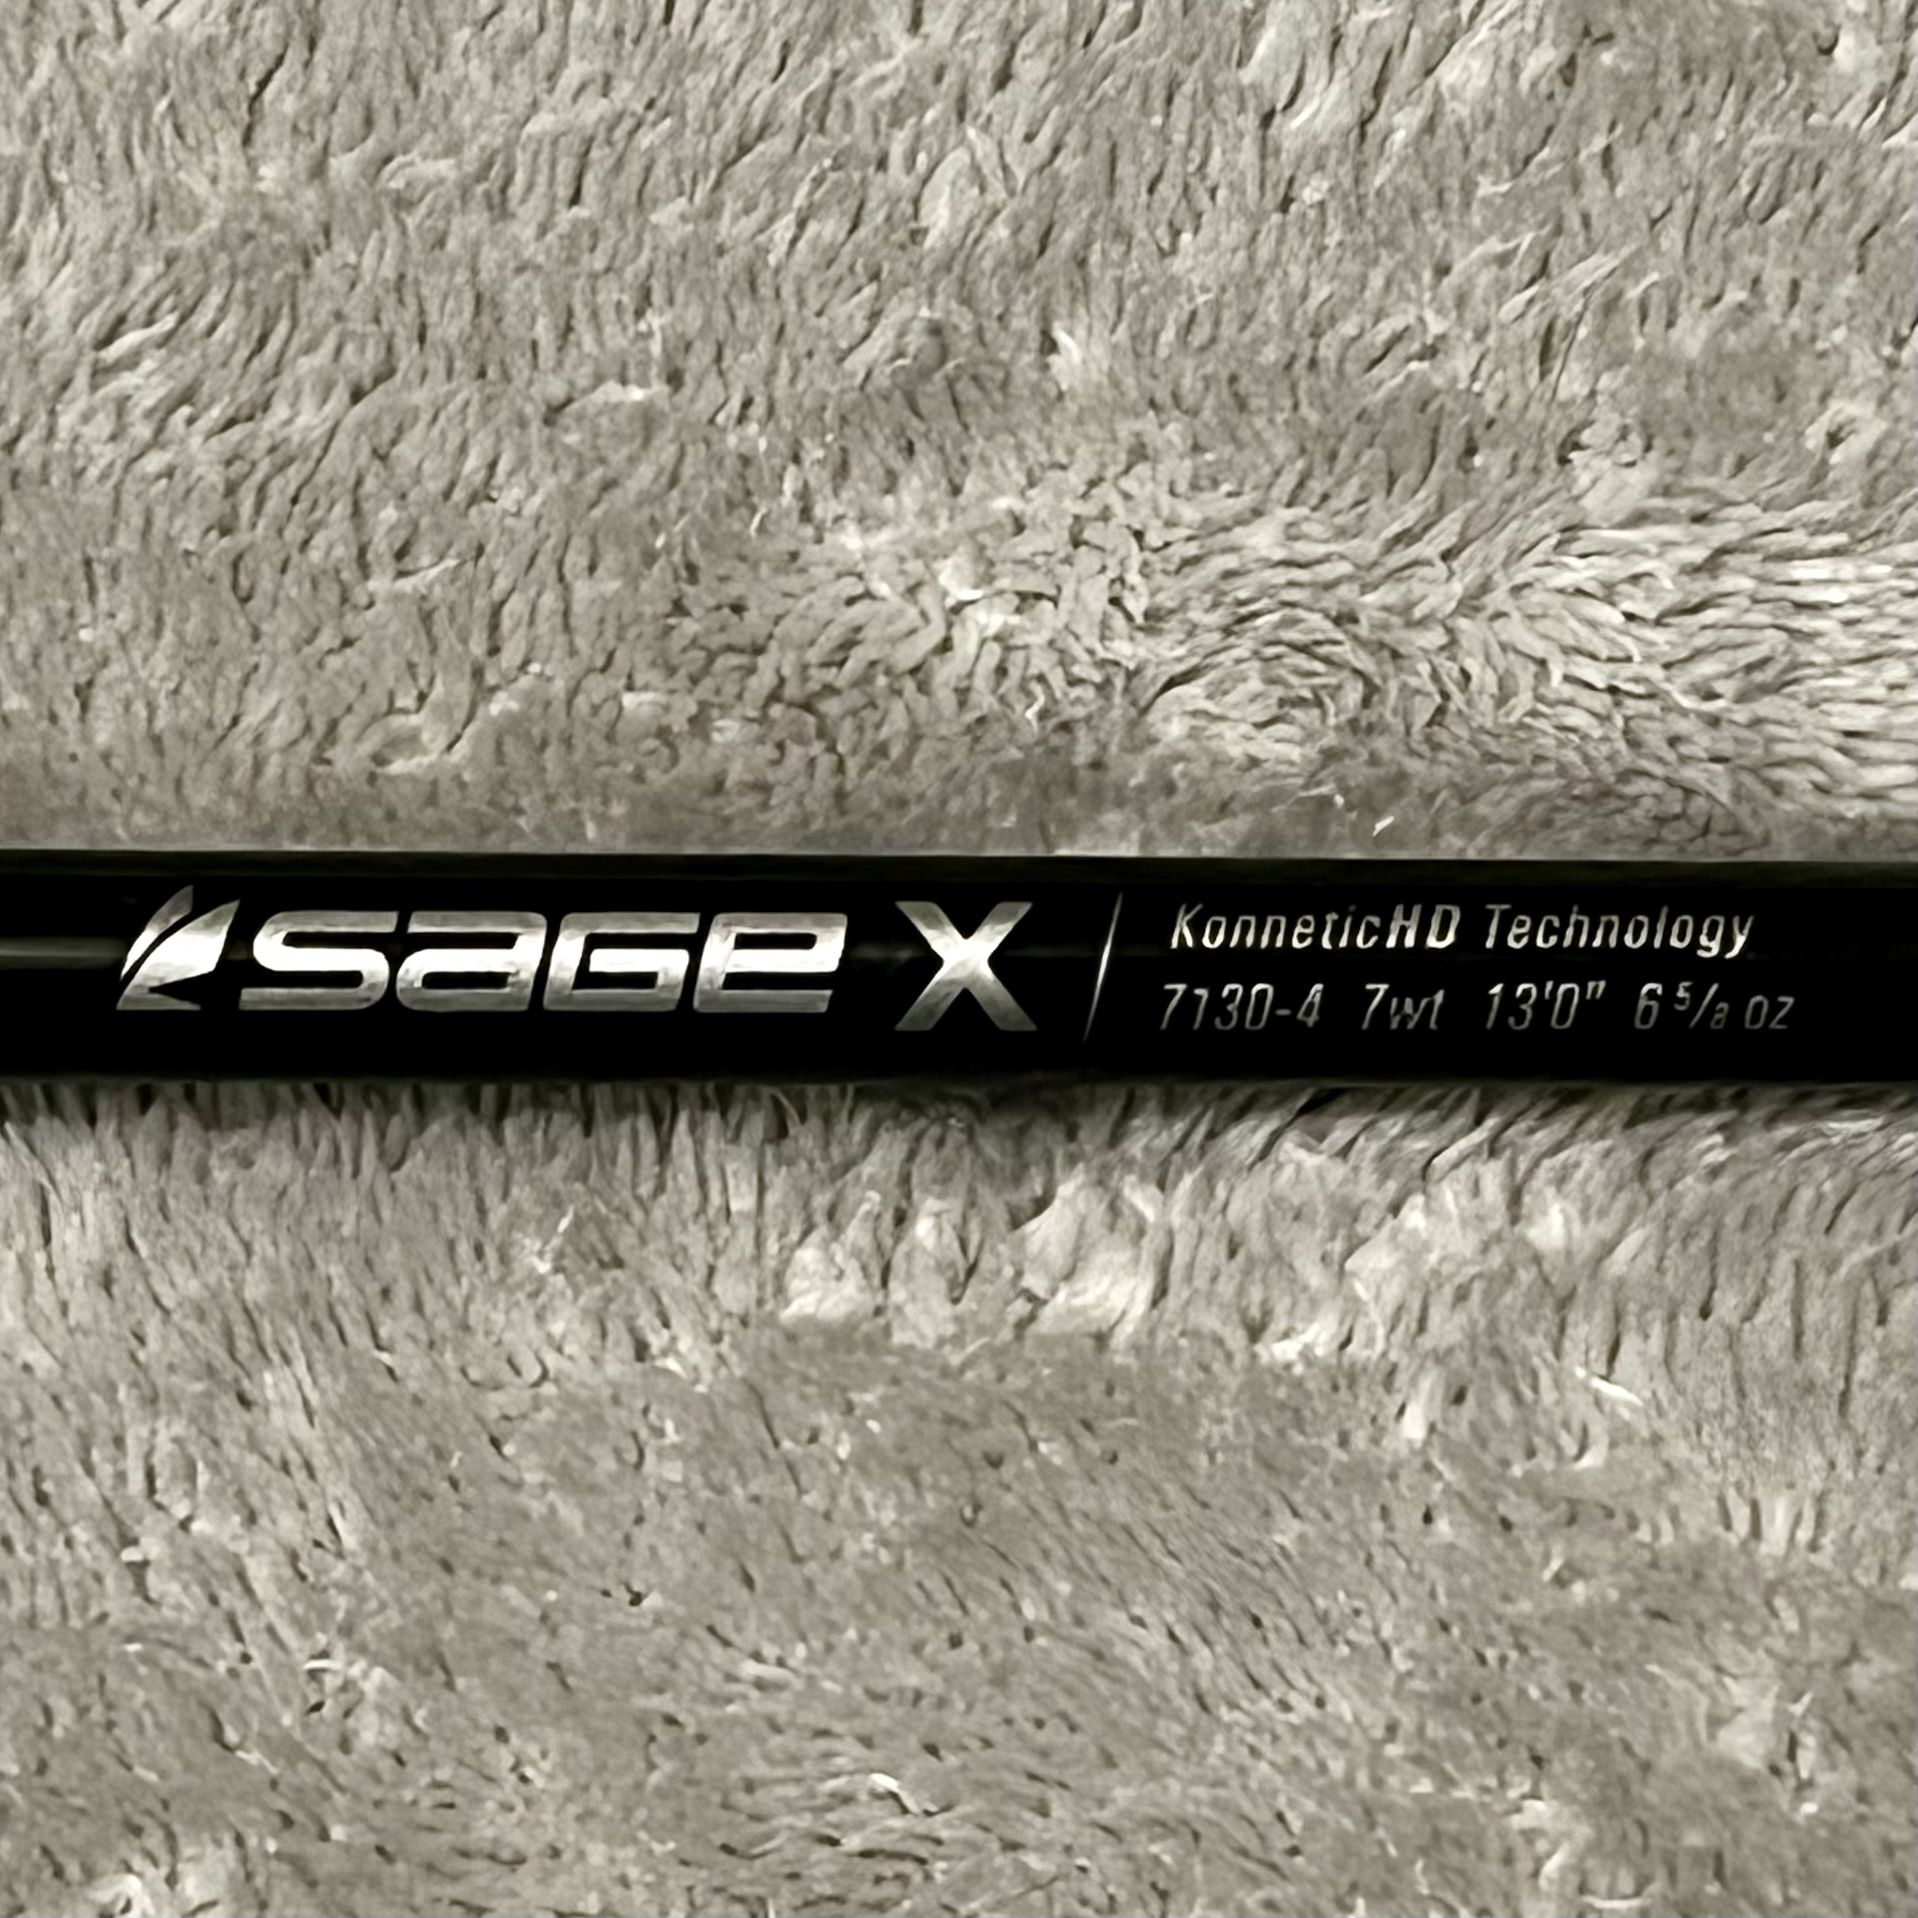 Sage X 7130-4 Spey Rod